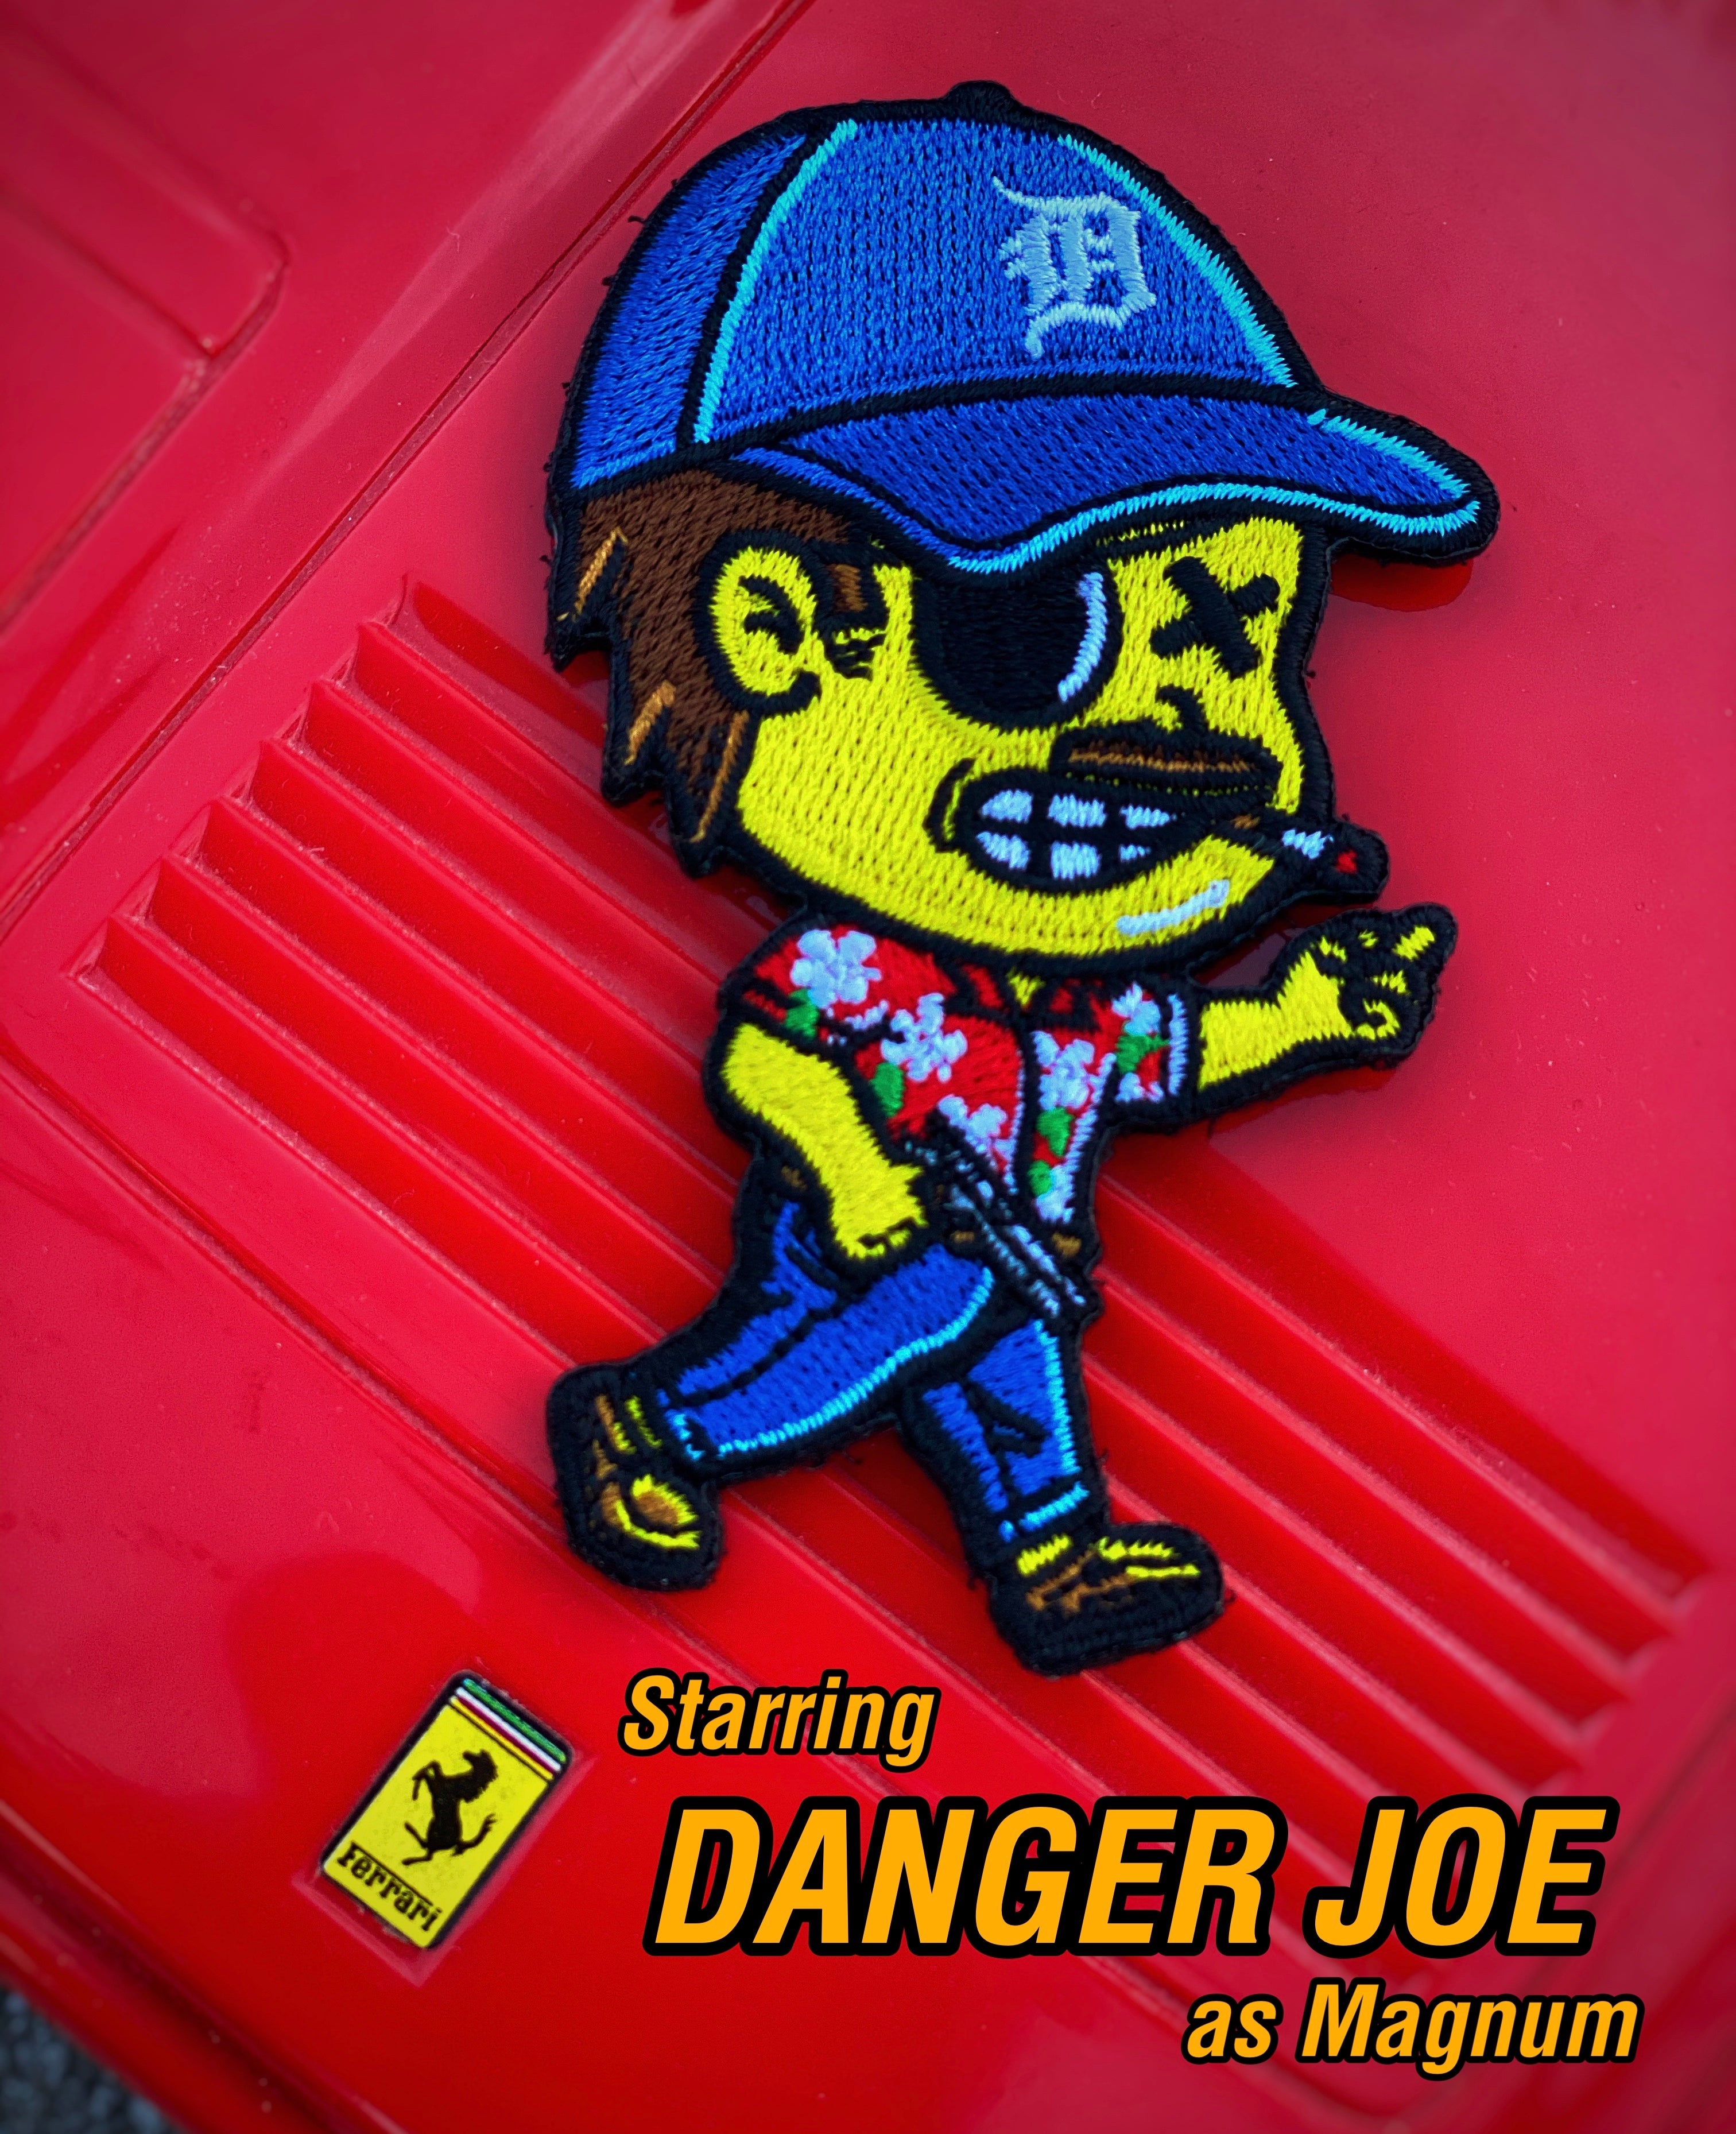 Dangerous Goods™️ Danger Joe Action Figure Morale Patch - Magnum